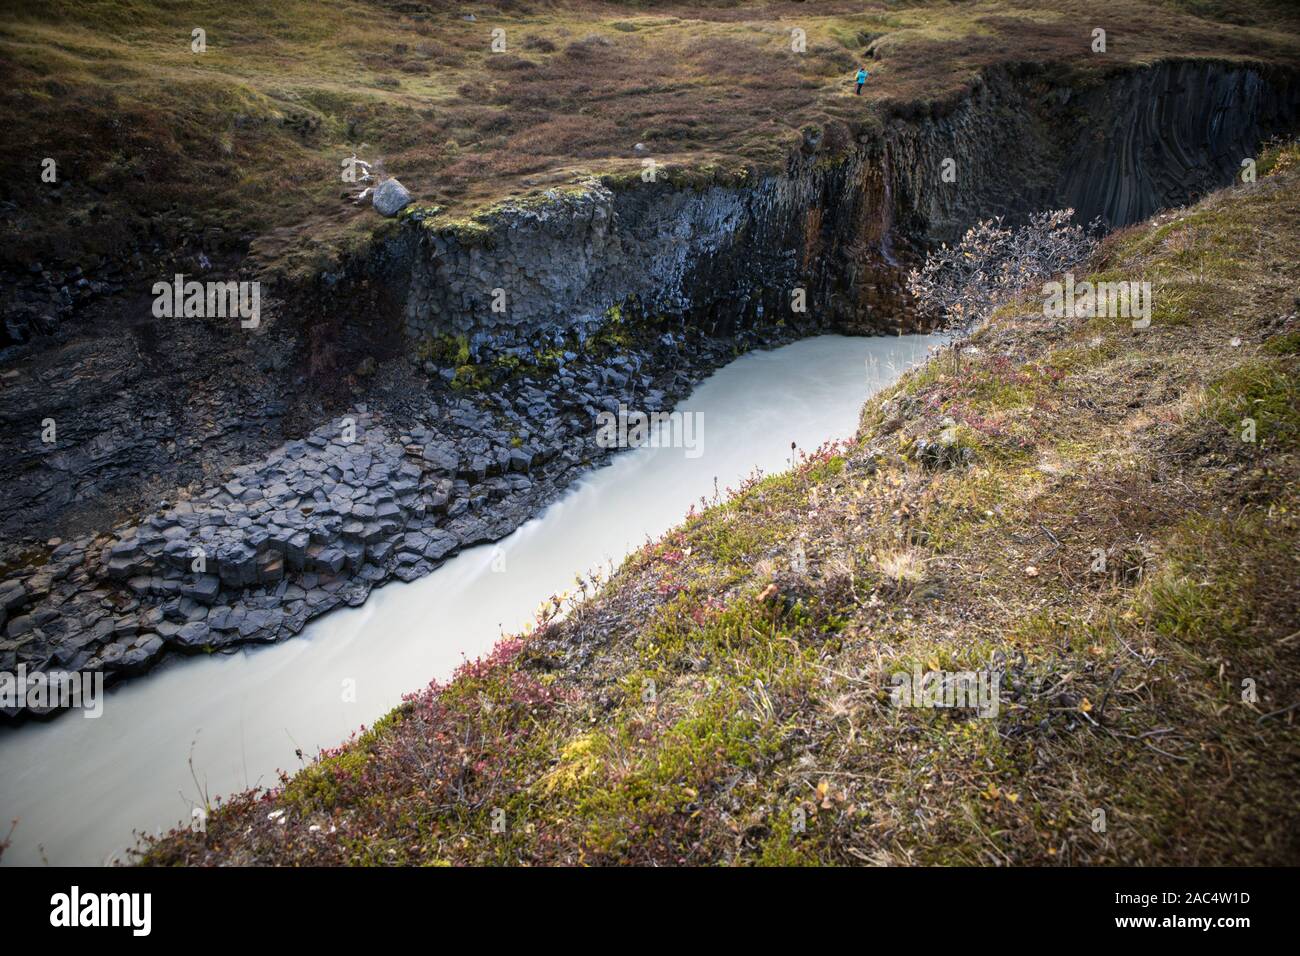 Studlagil Canyon, Iceland Stock Photo